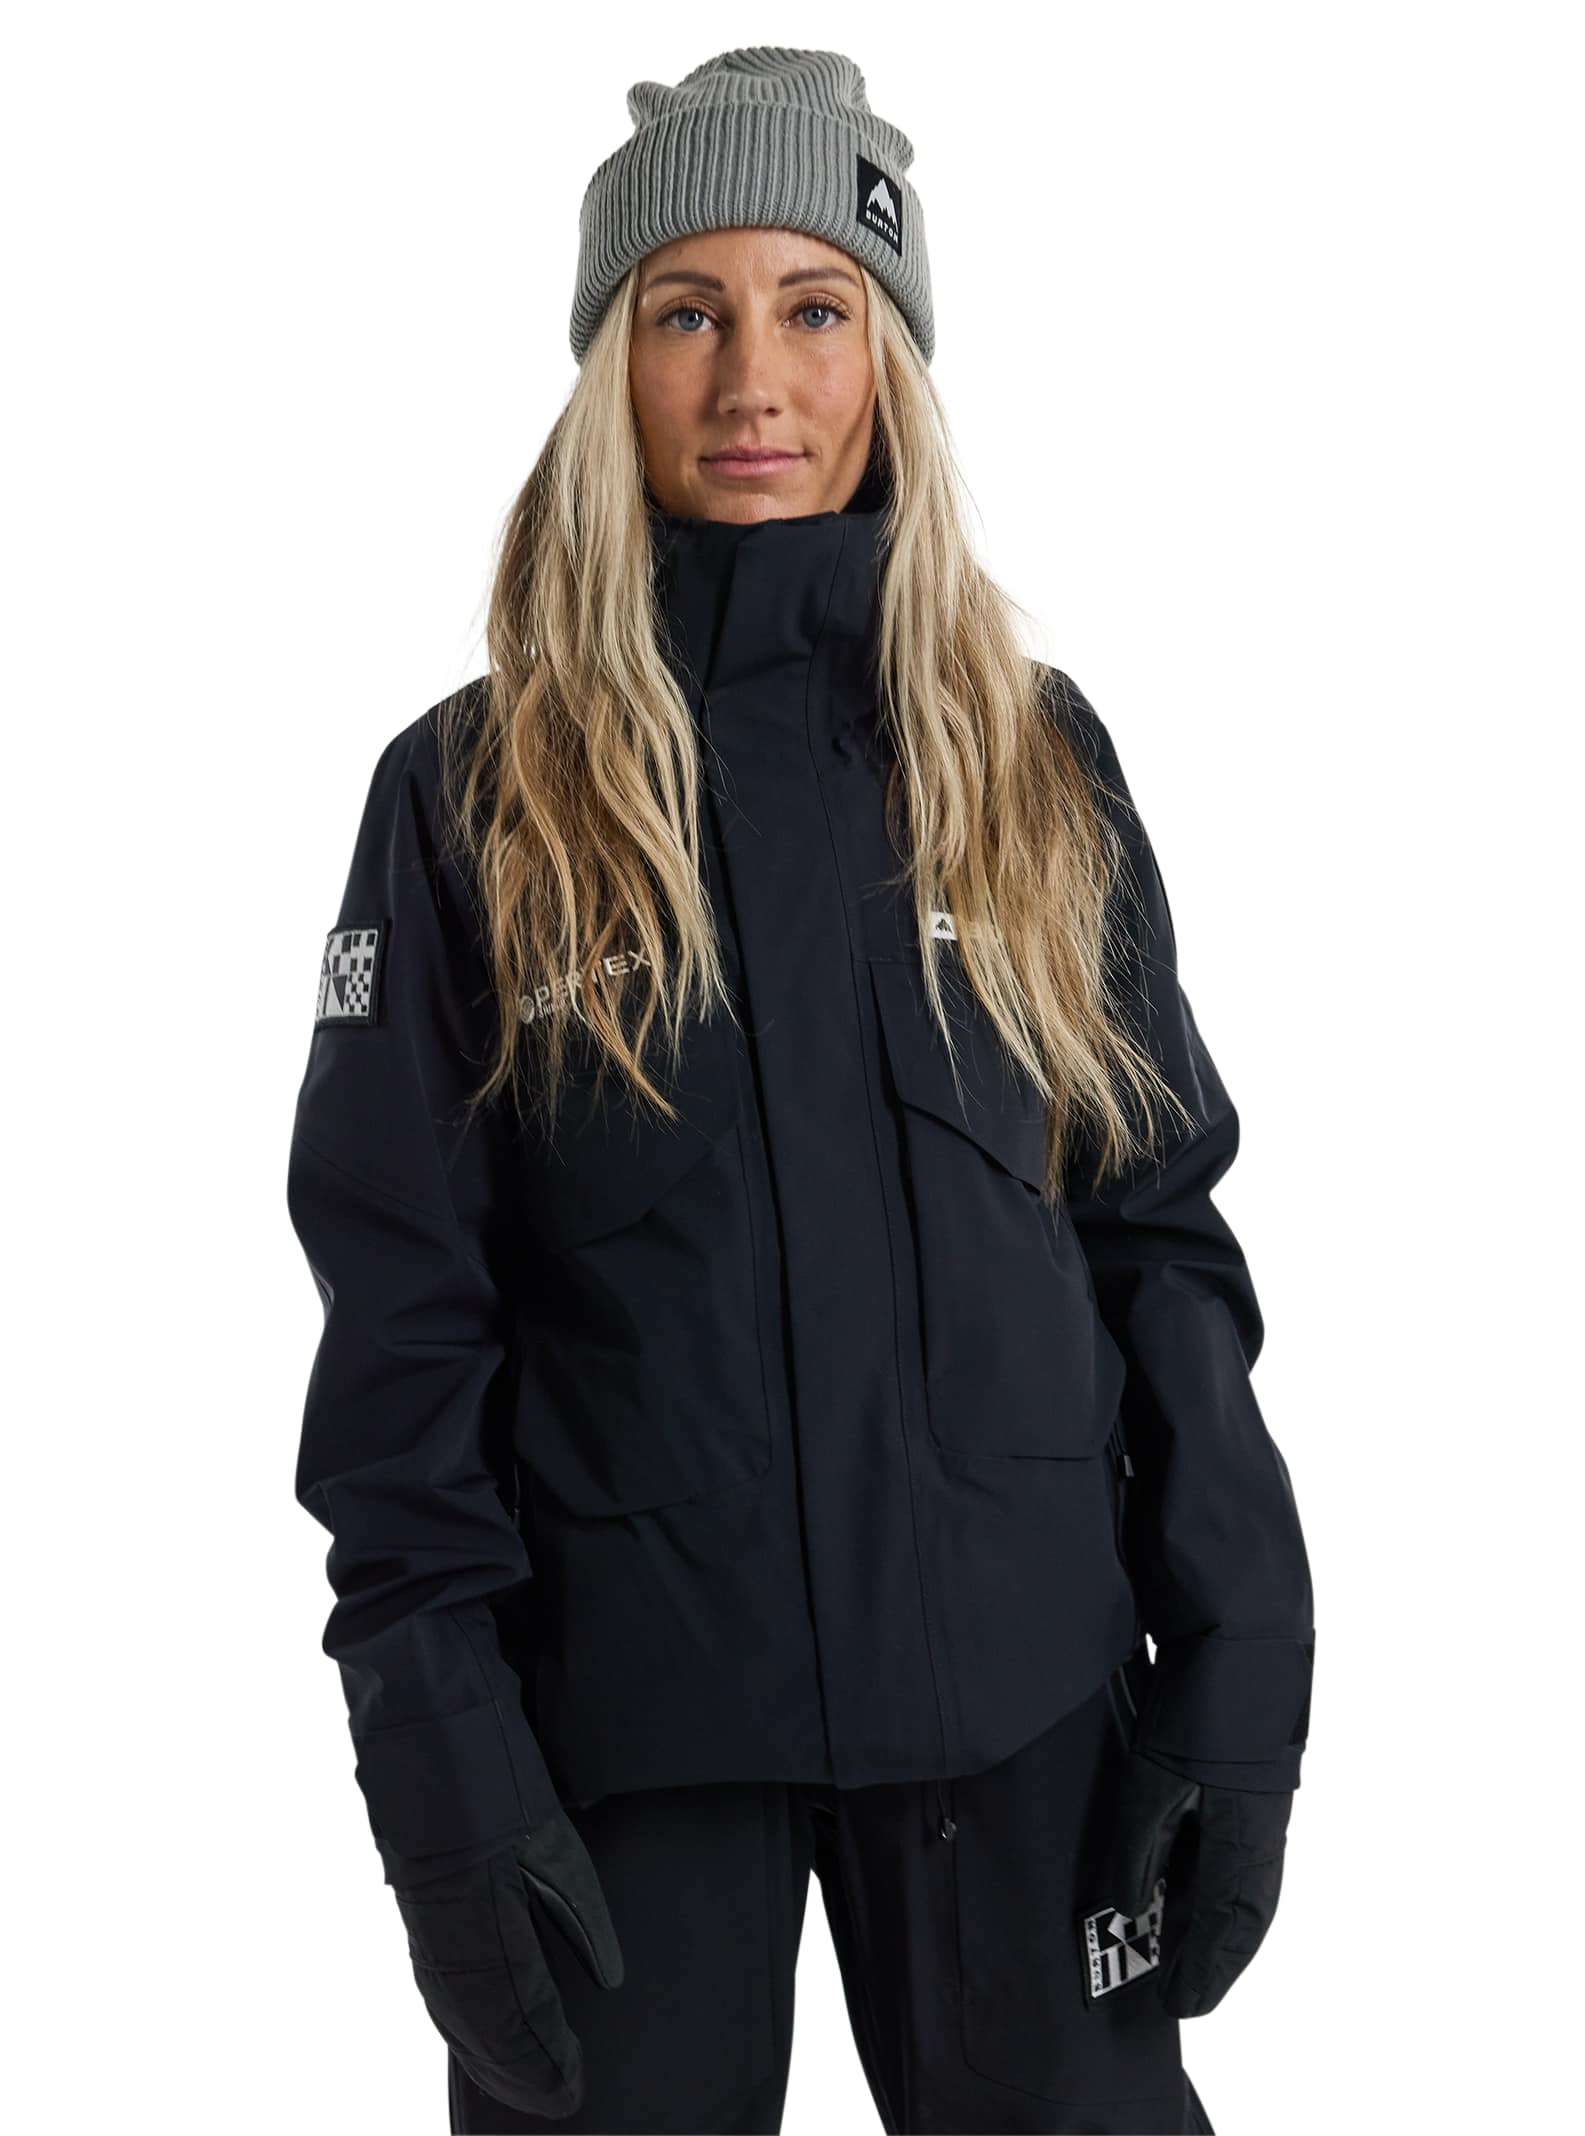 Vestes, manteaux, pantalons techniques et salopettes pour femme de Burton |  Burton Snowboards FR